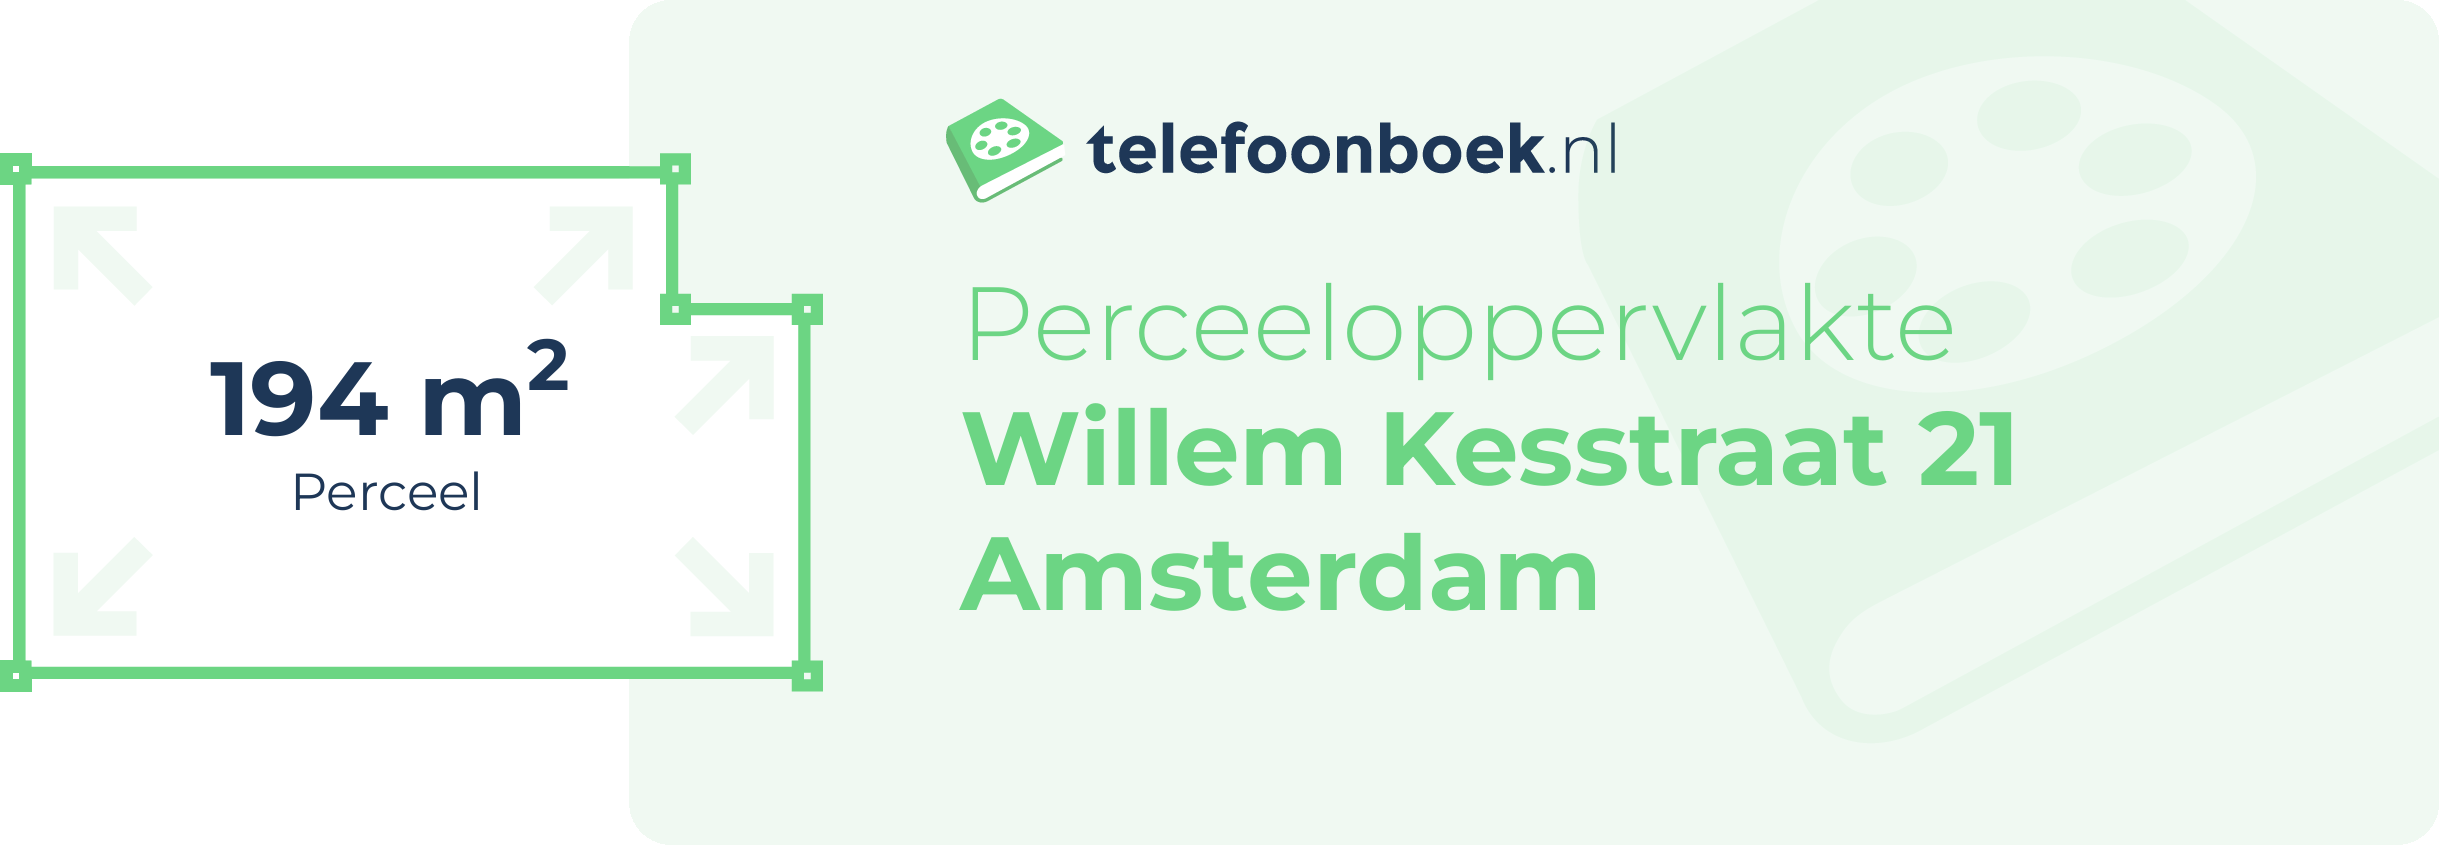 Perceeloppervlakte Willem Kesstraat 21 Amsterdam